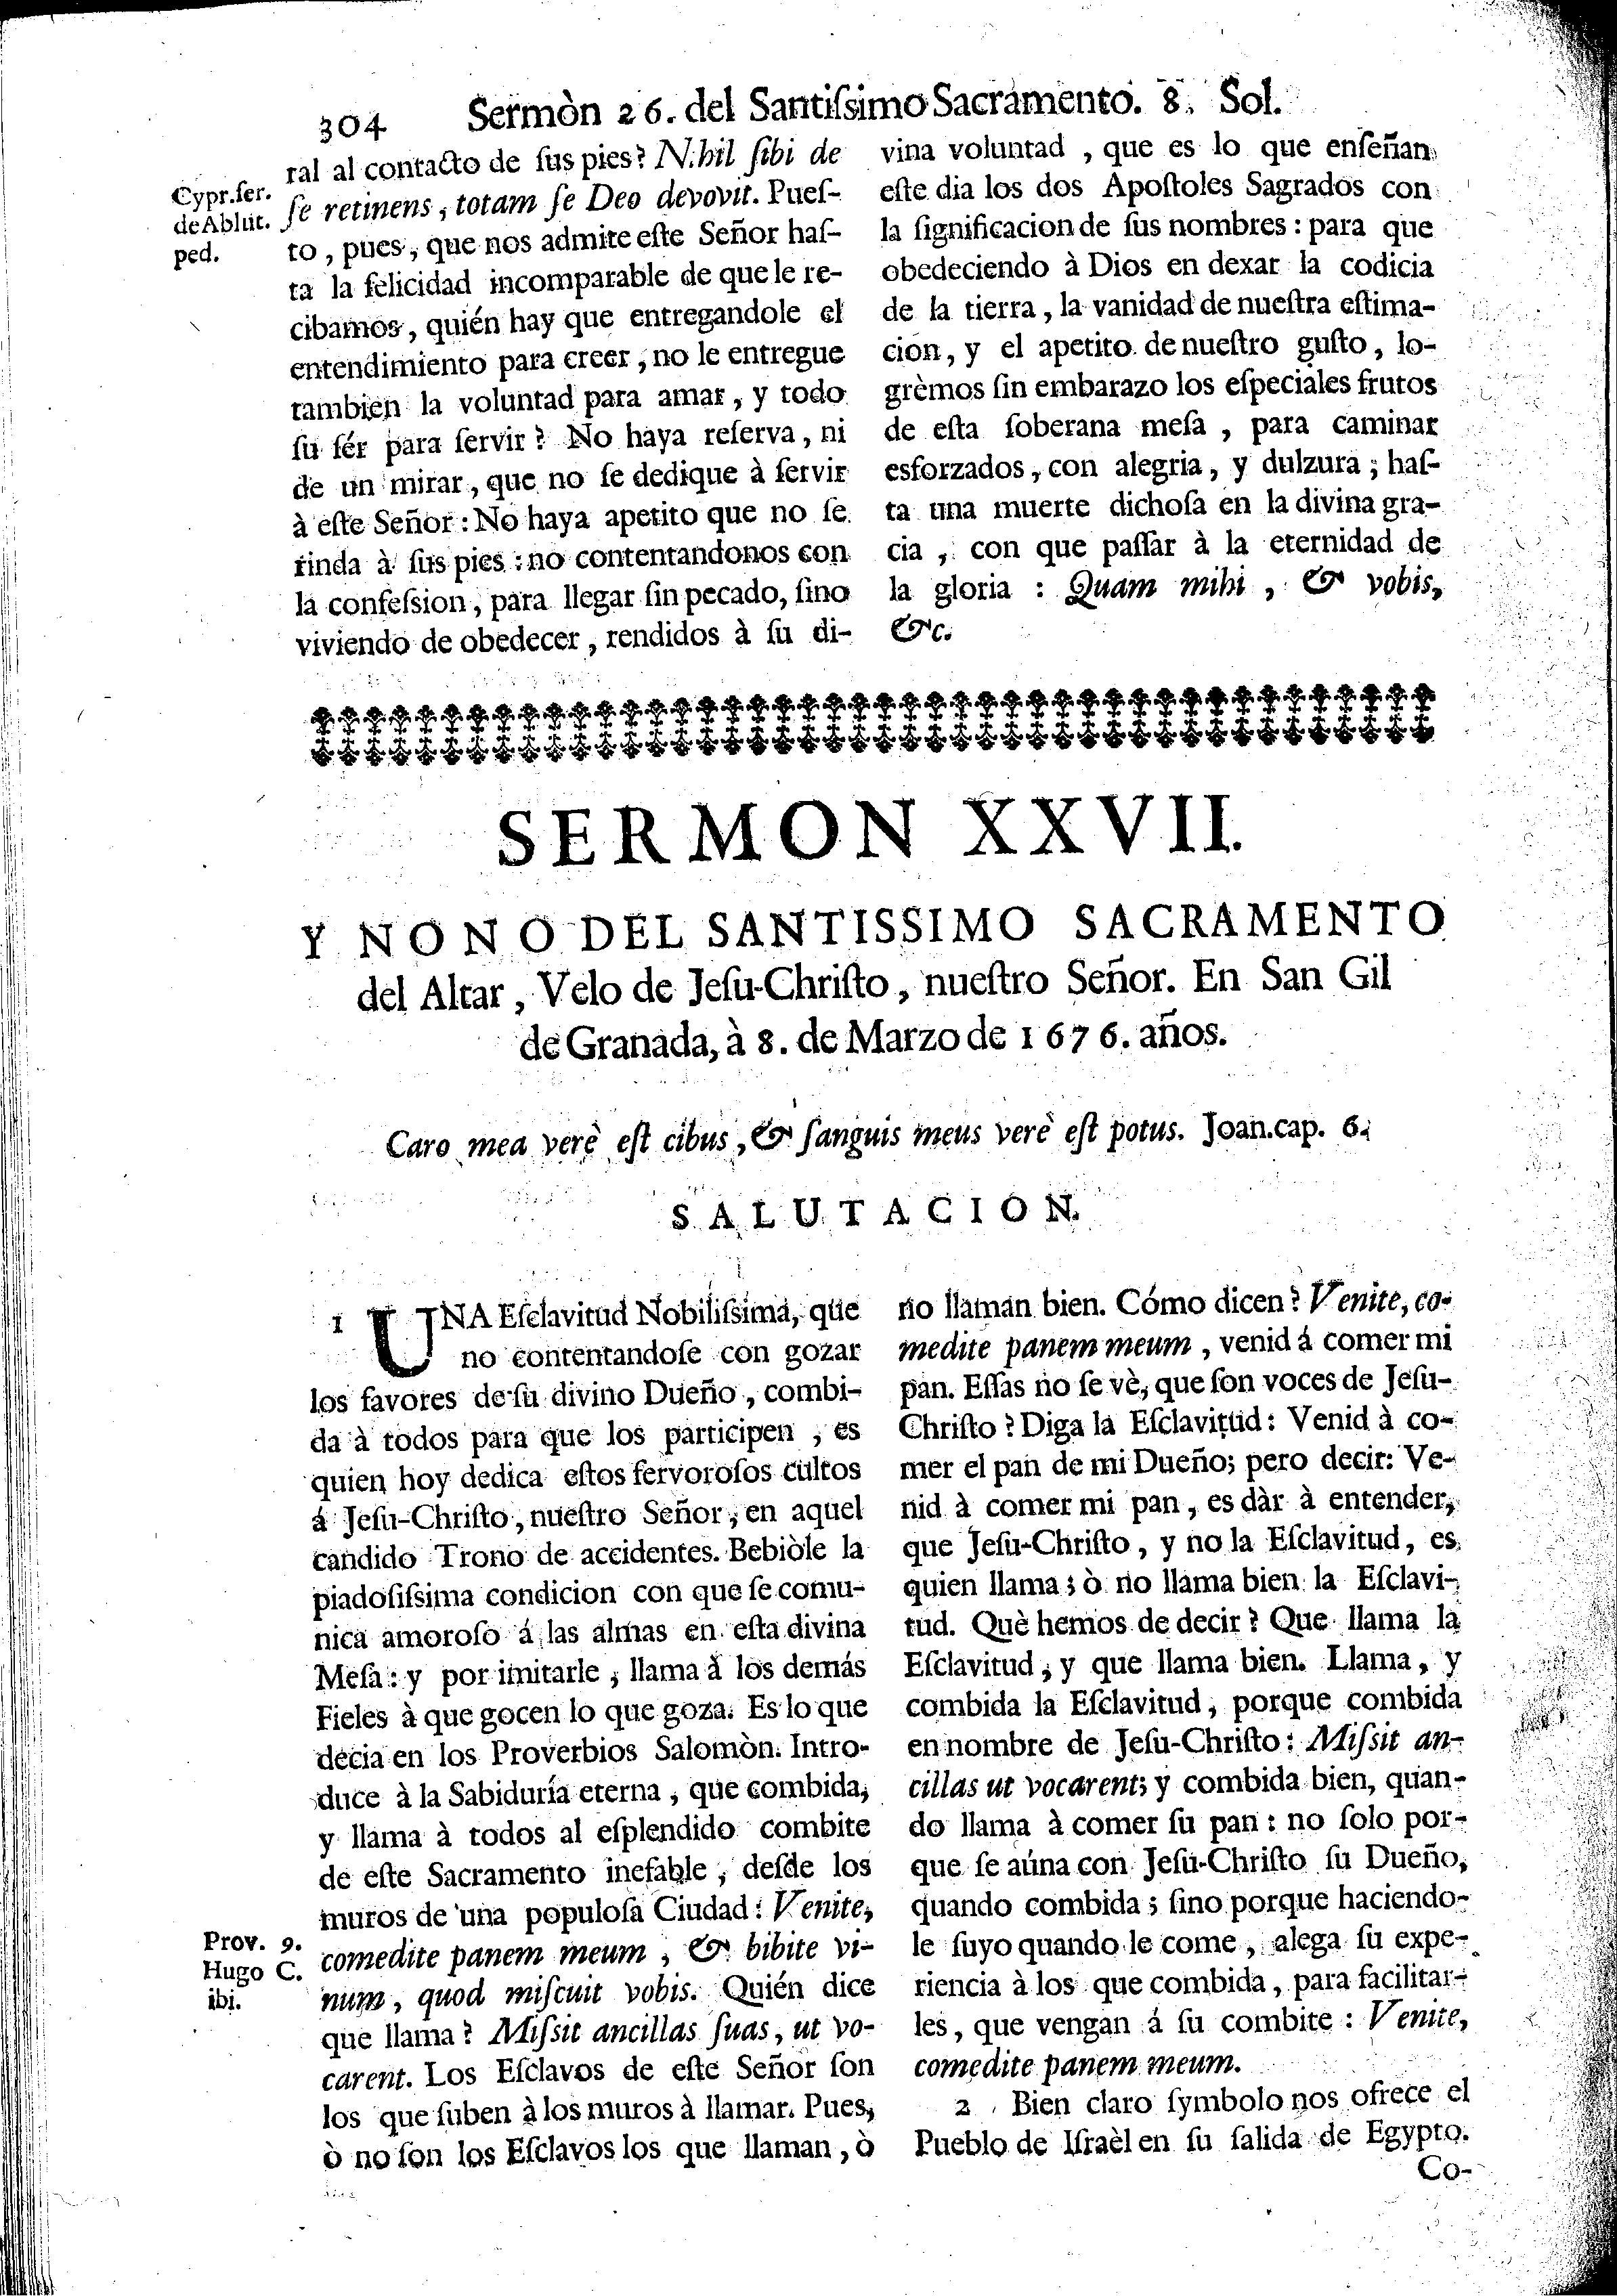 Sermon XXVII y Nono del Santissimo Sacramento del Altar, Velo de Jesu-Christo